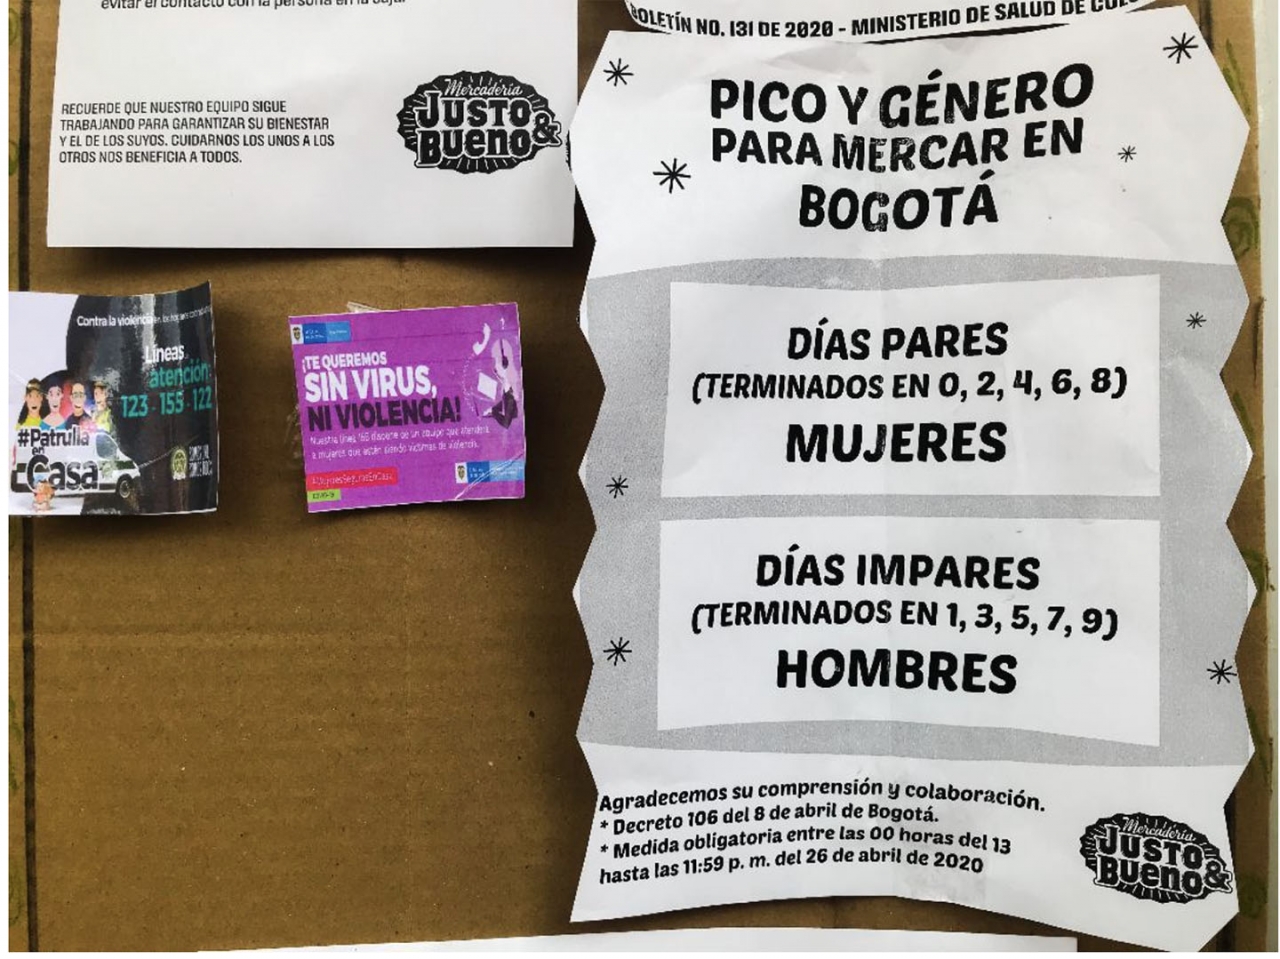 Pico y género: las críticas al nuevo decreto de la Alcaldía de Bogotá